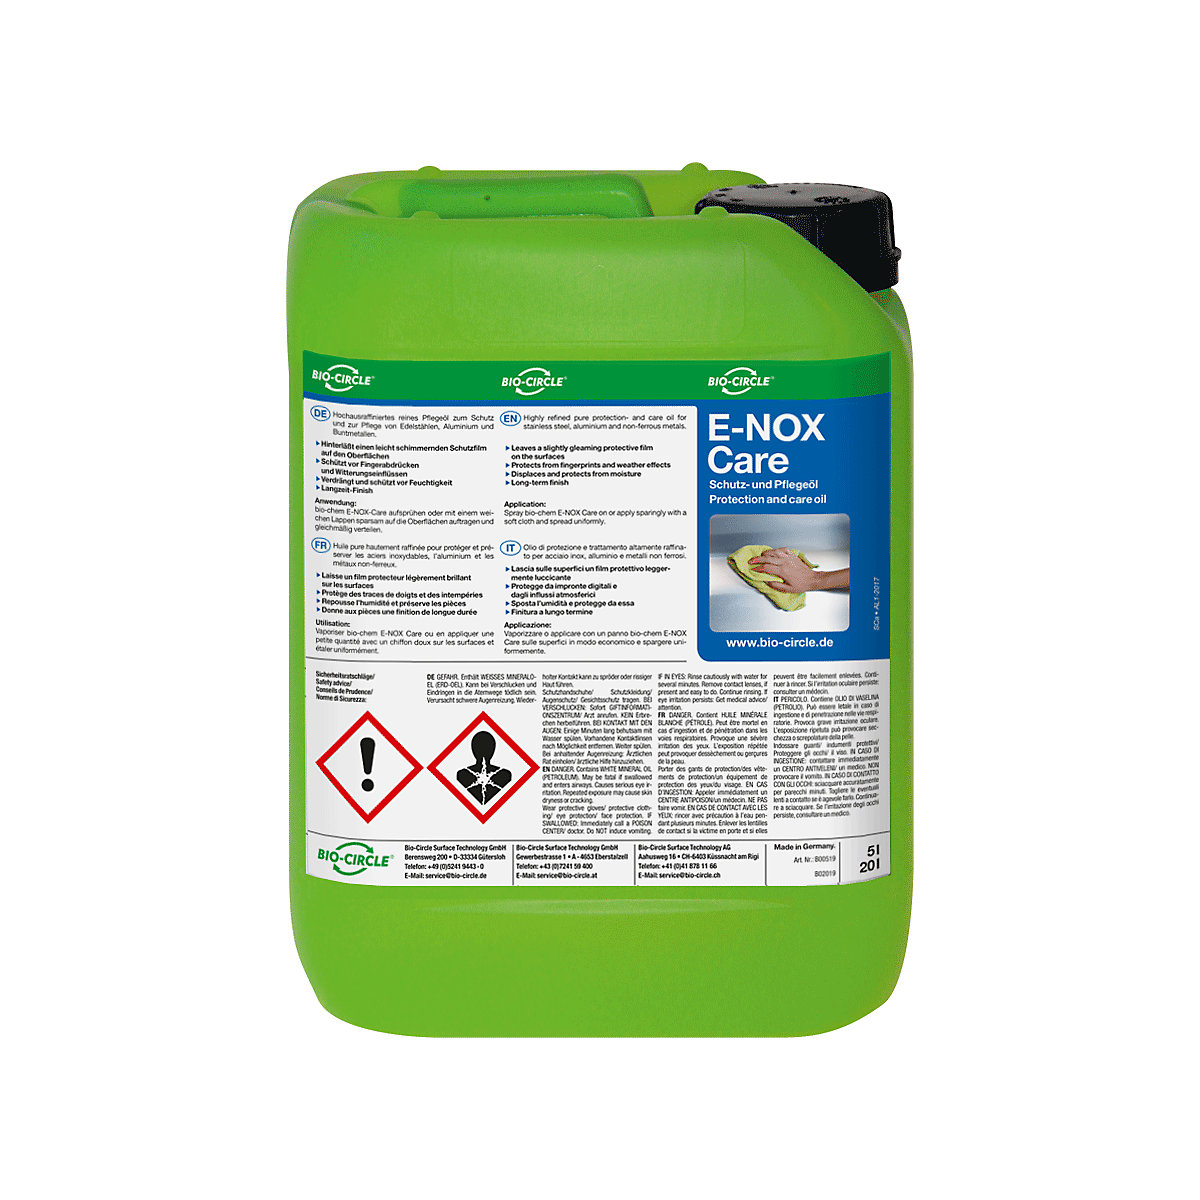 Ochranný/ošetrovací olej E-NOX Care - Bio-Circle